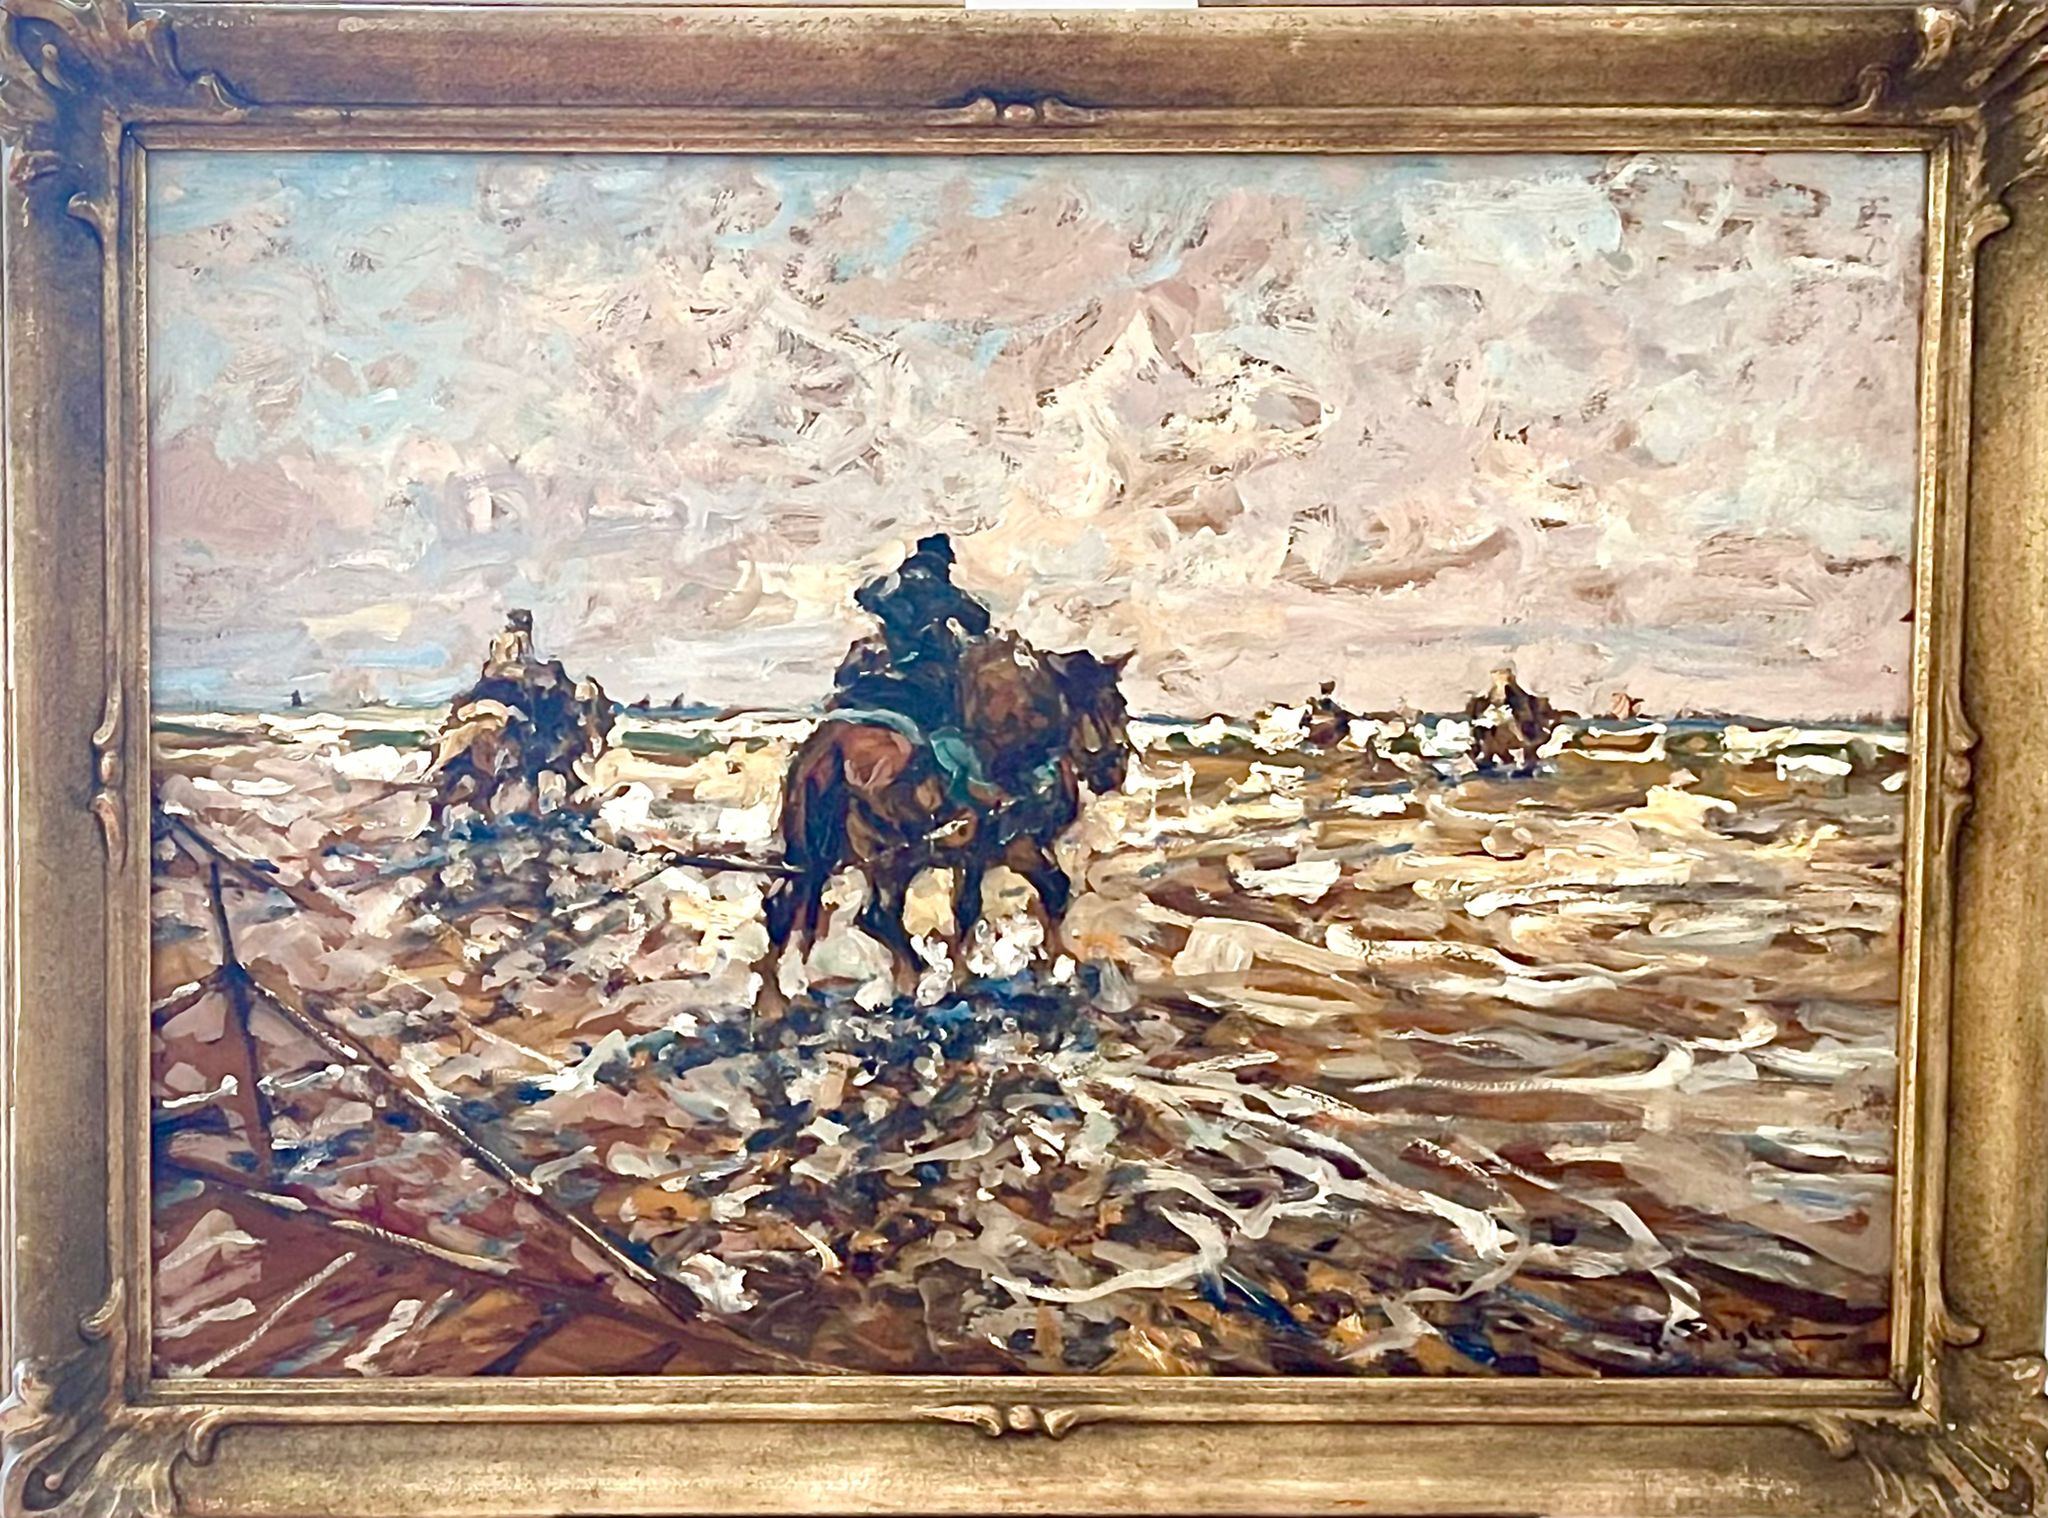 Horses On Beach